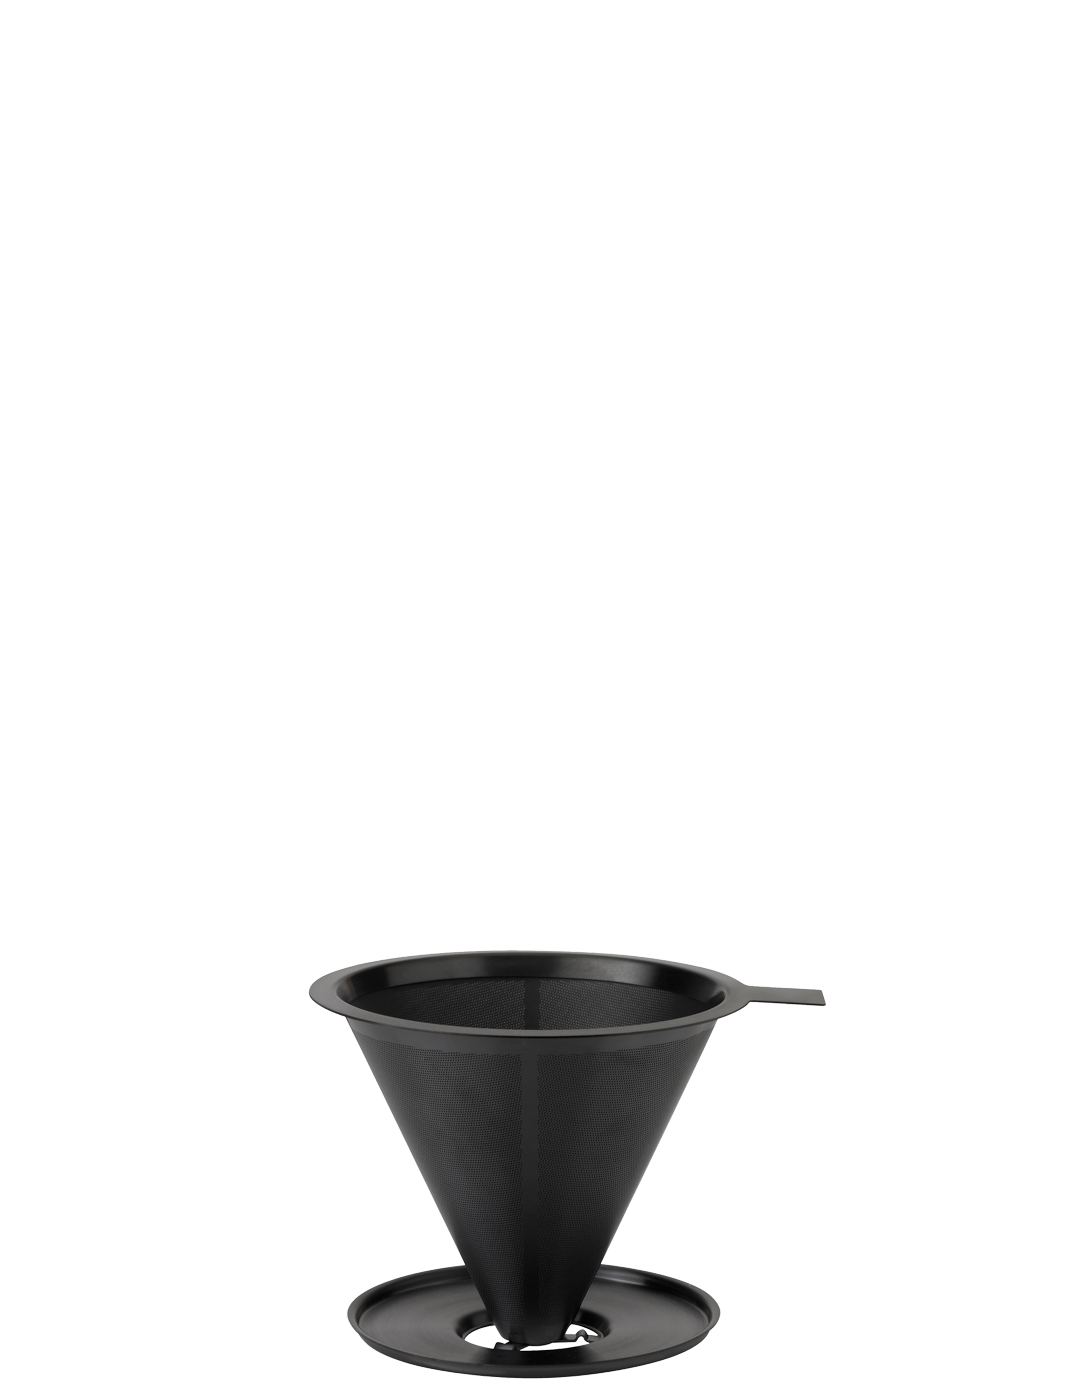 Nohr slow brew Kaffeefilter black metallic - Maße: 11,7 x 13,7 x 9,8 cm - von Stelton